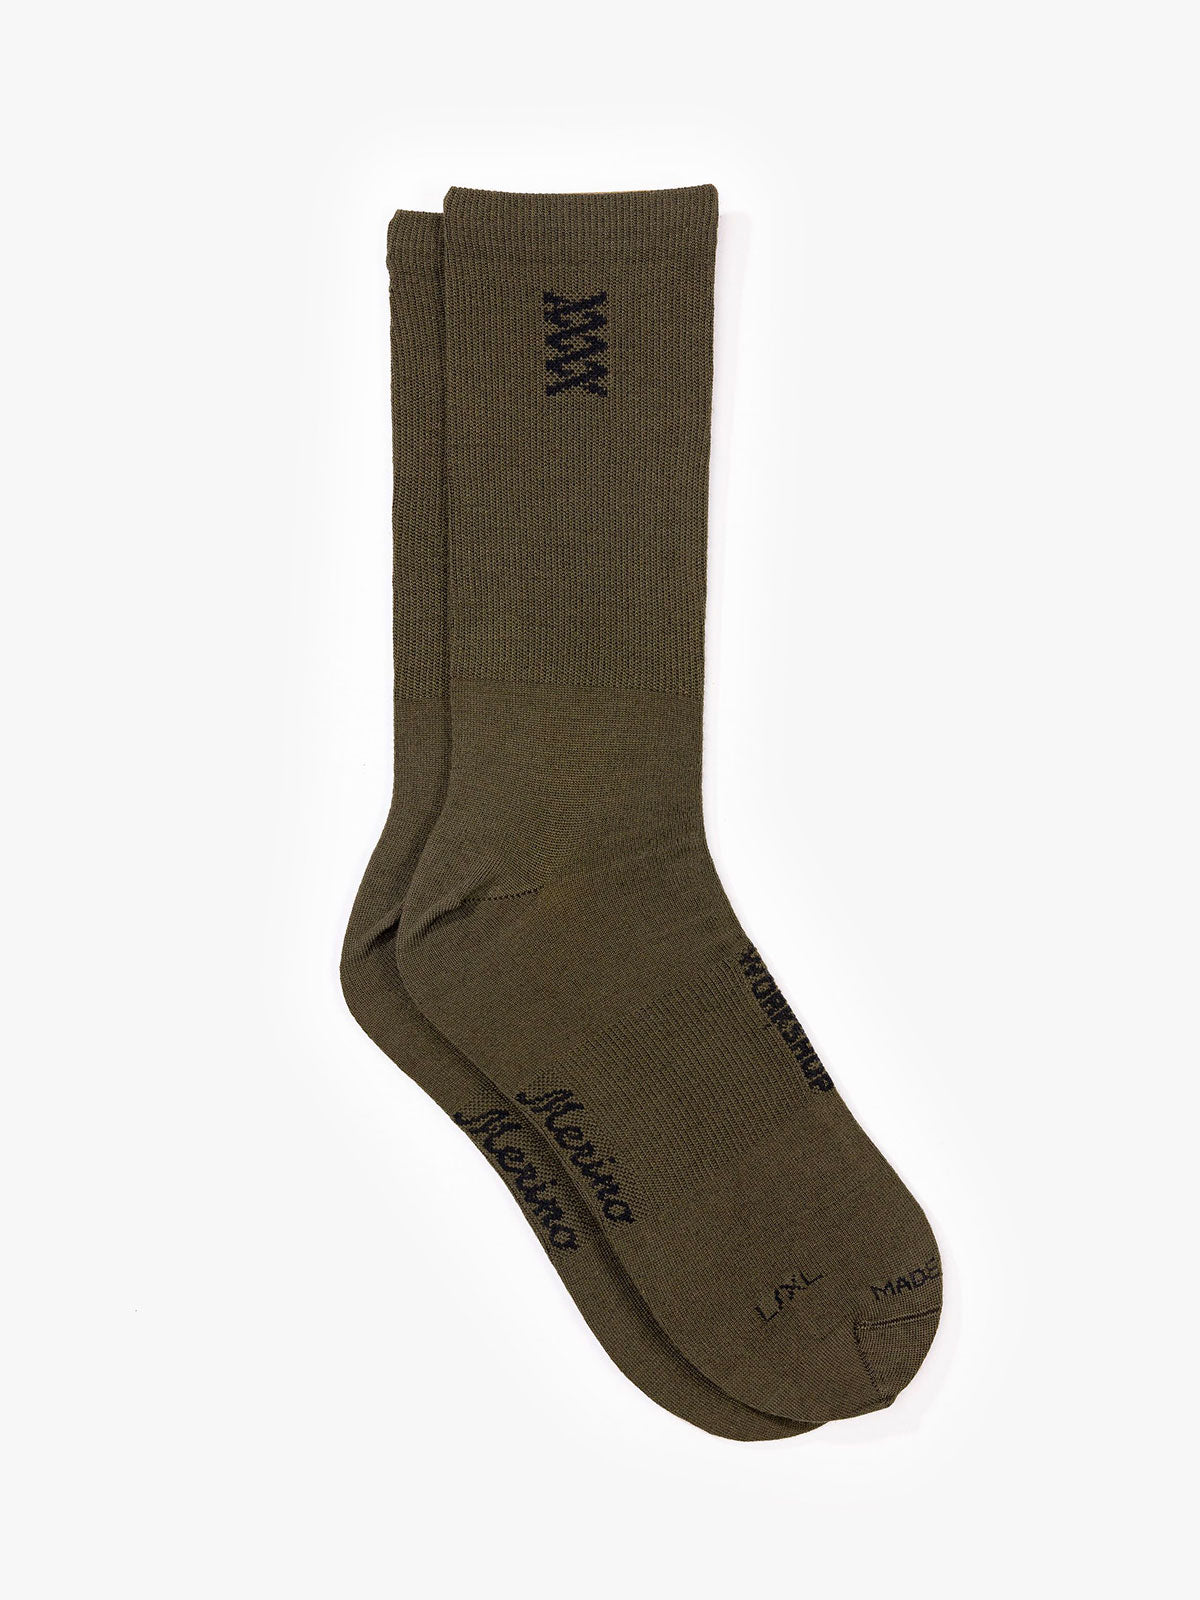 Mission Pro Wool Socks by Mission Workshop - Säänkestävät laukut ja tekniset vaatteet - San Francisco & Los Angeles - Rakennettu kestämään - ikuinen takuu